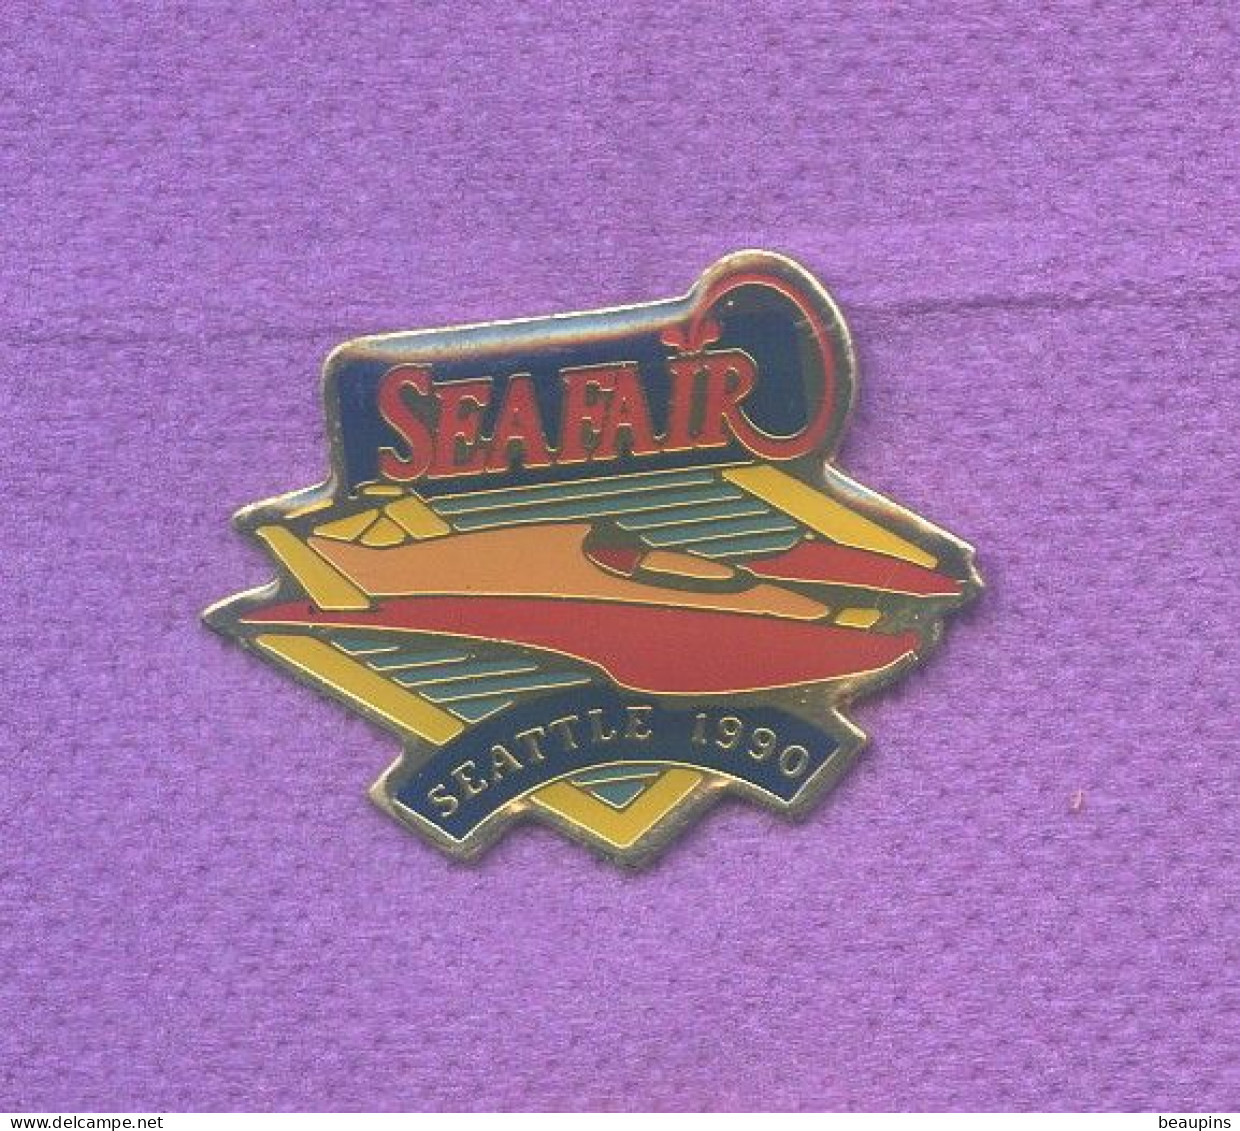 Rare Pins Off Shore Bateau Seattle Usa 1990 Sea Fair N513 - Bateaux